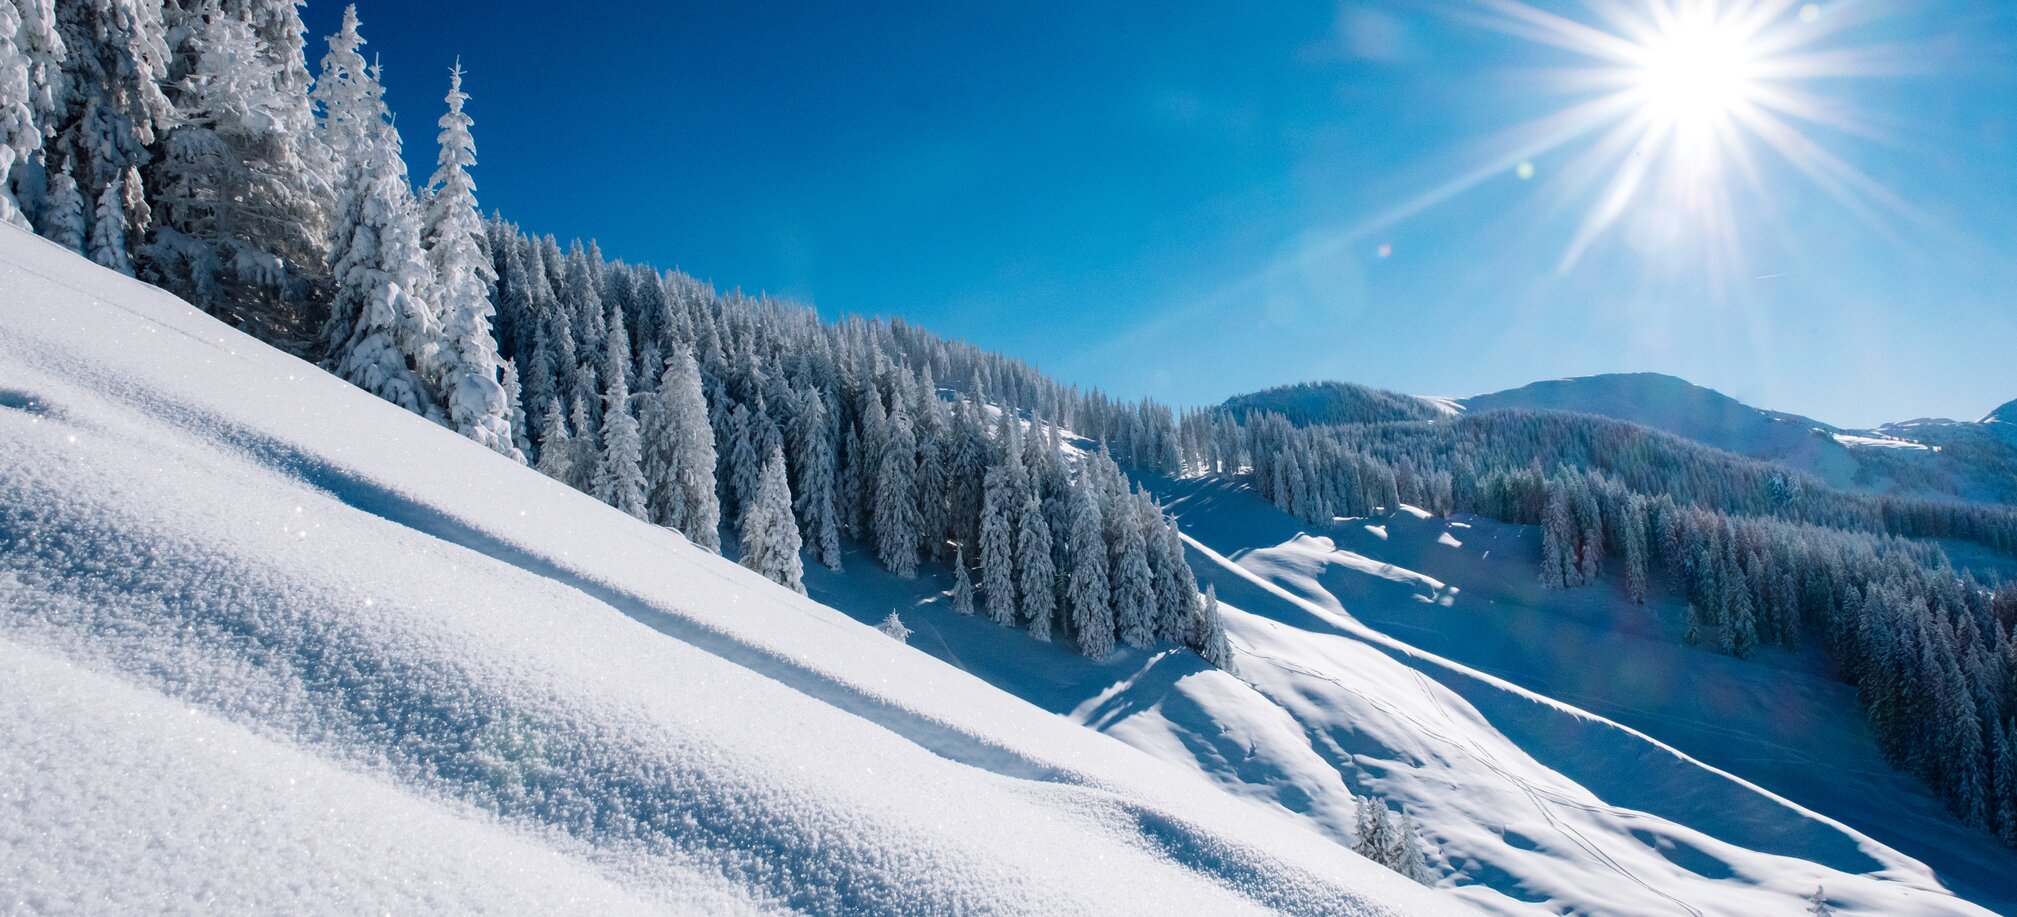 Beim Skifahren wunderschöne alpine Landschaften genießen in Ski amadé